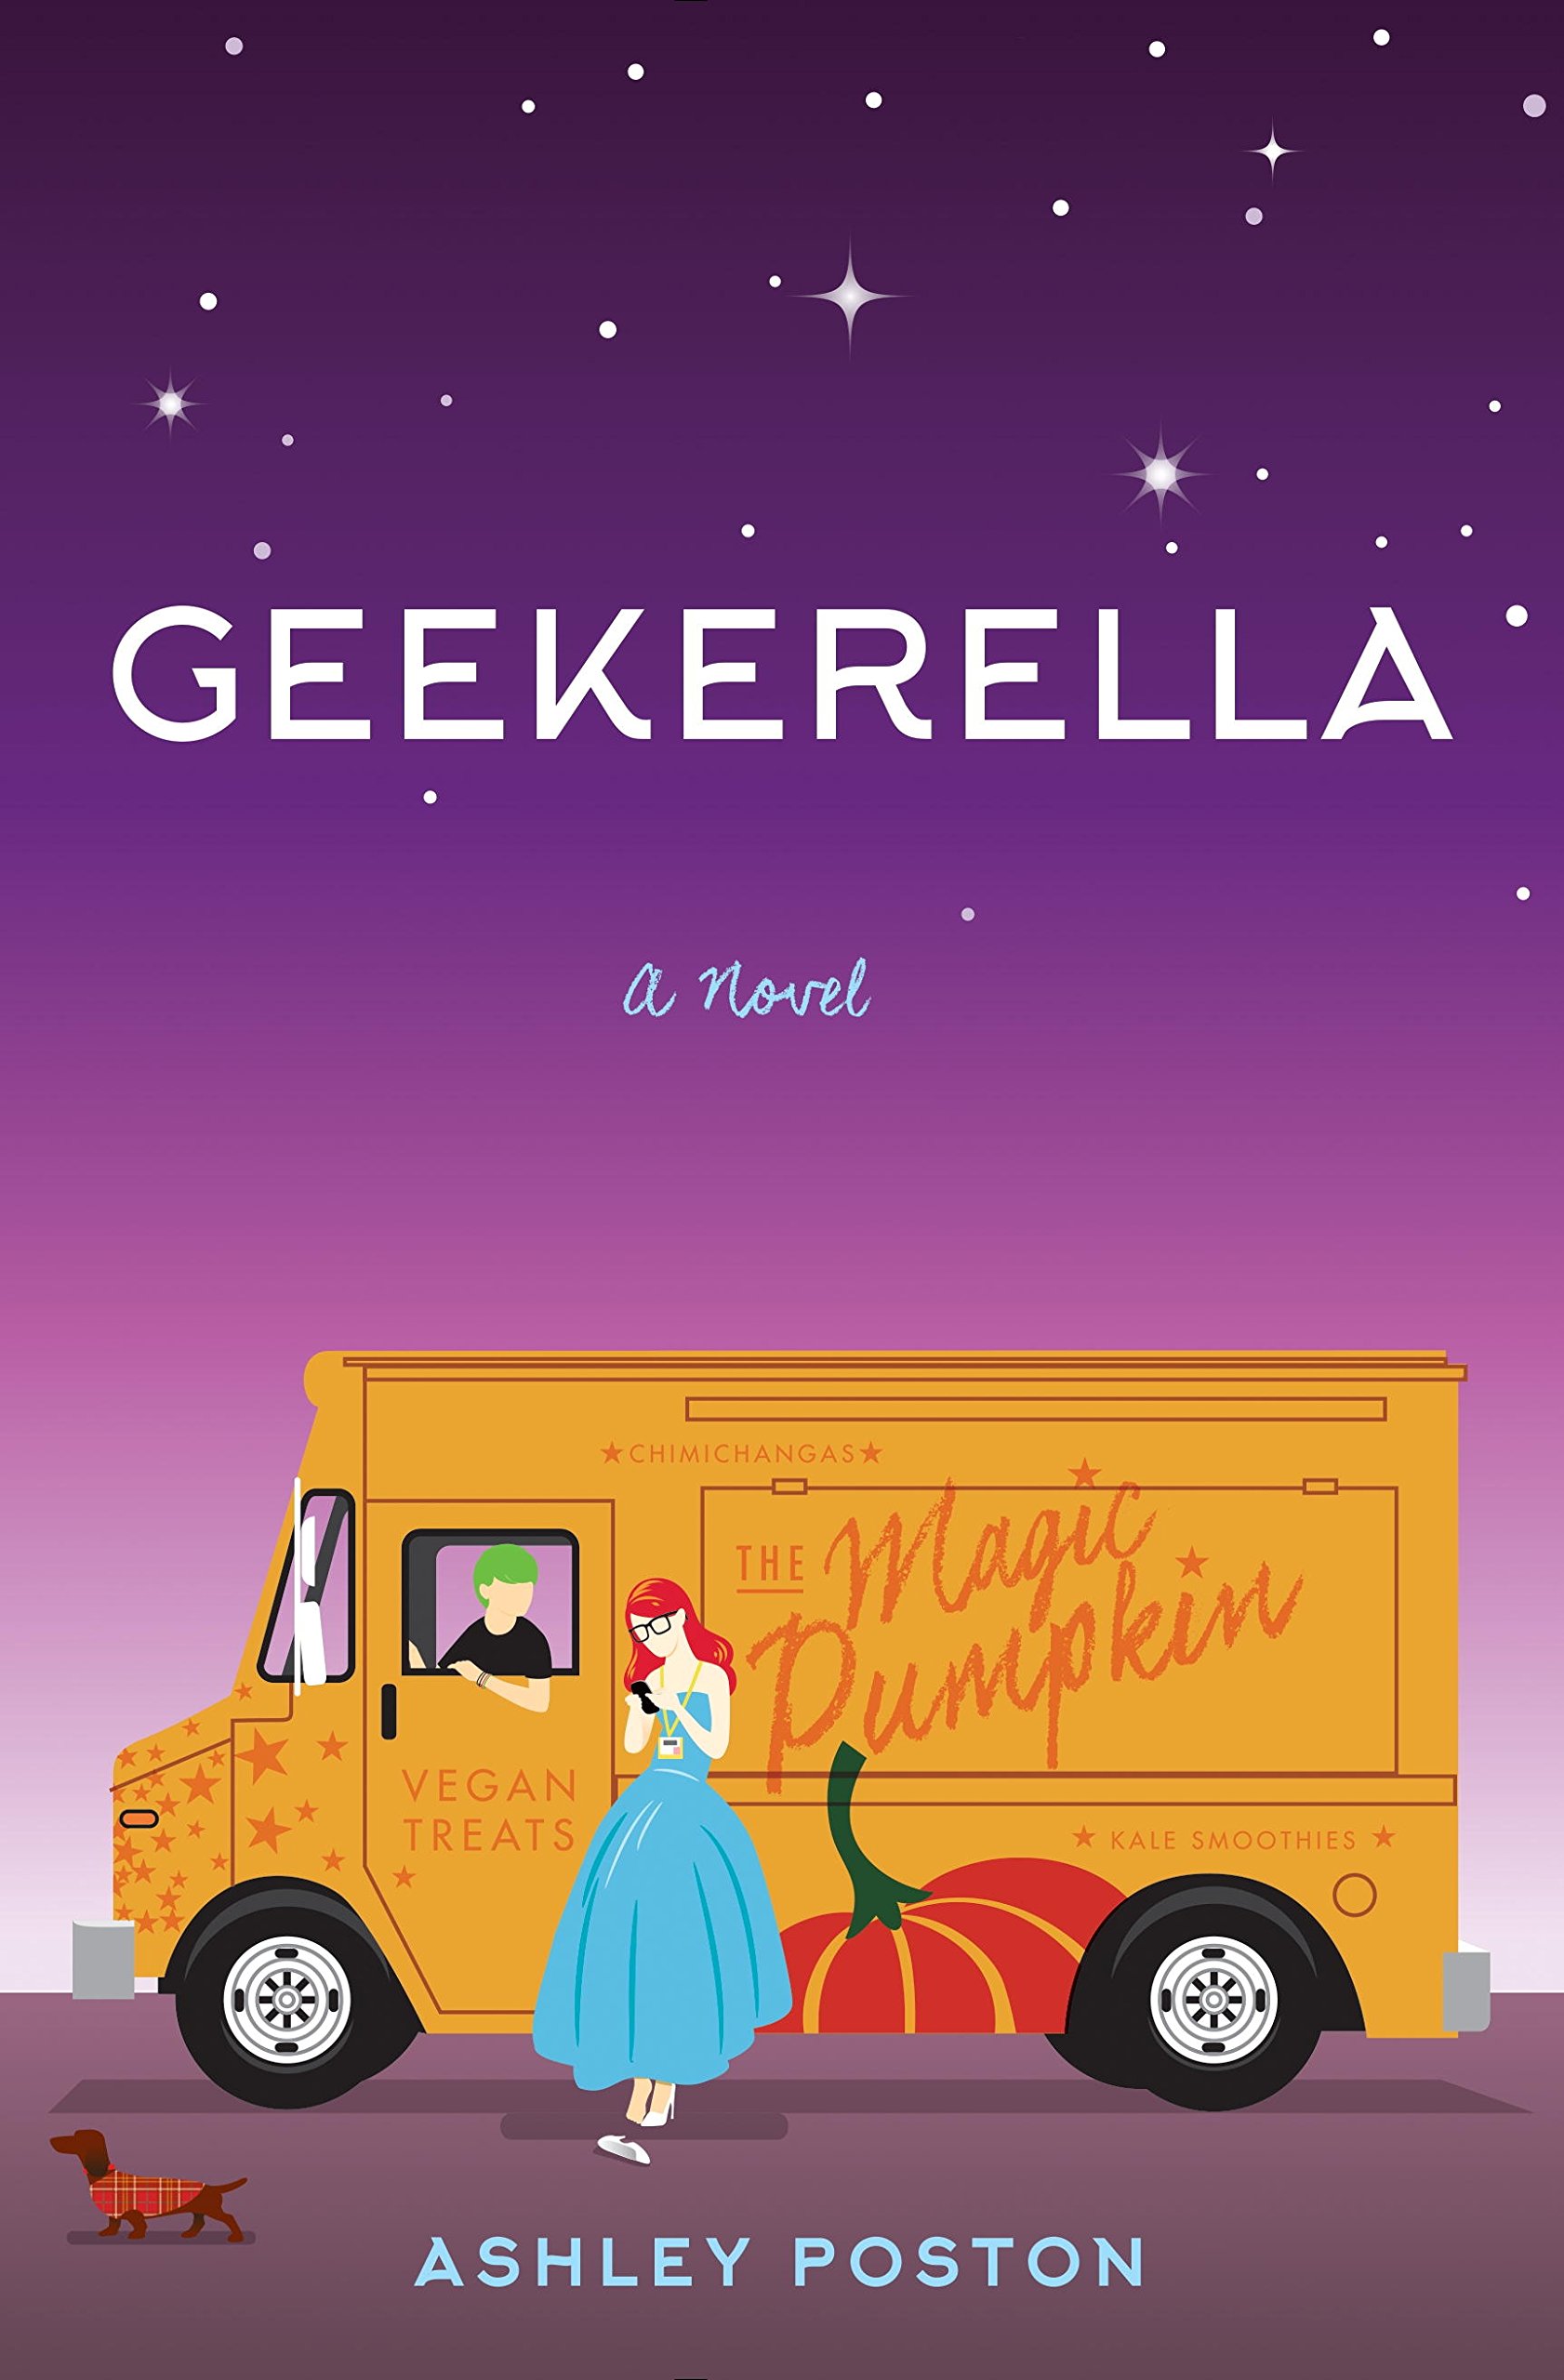 Book cover for Geekerella.